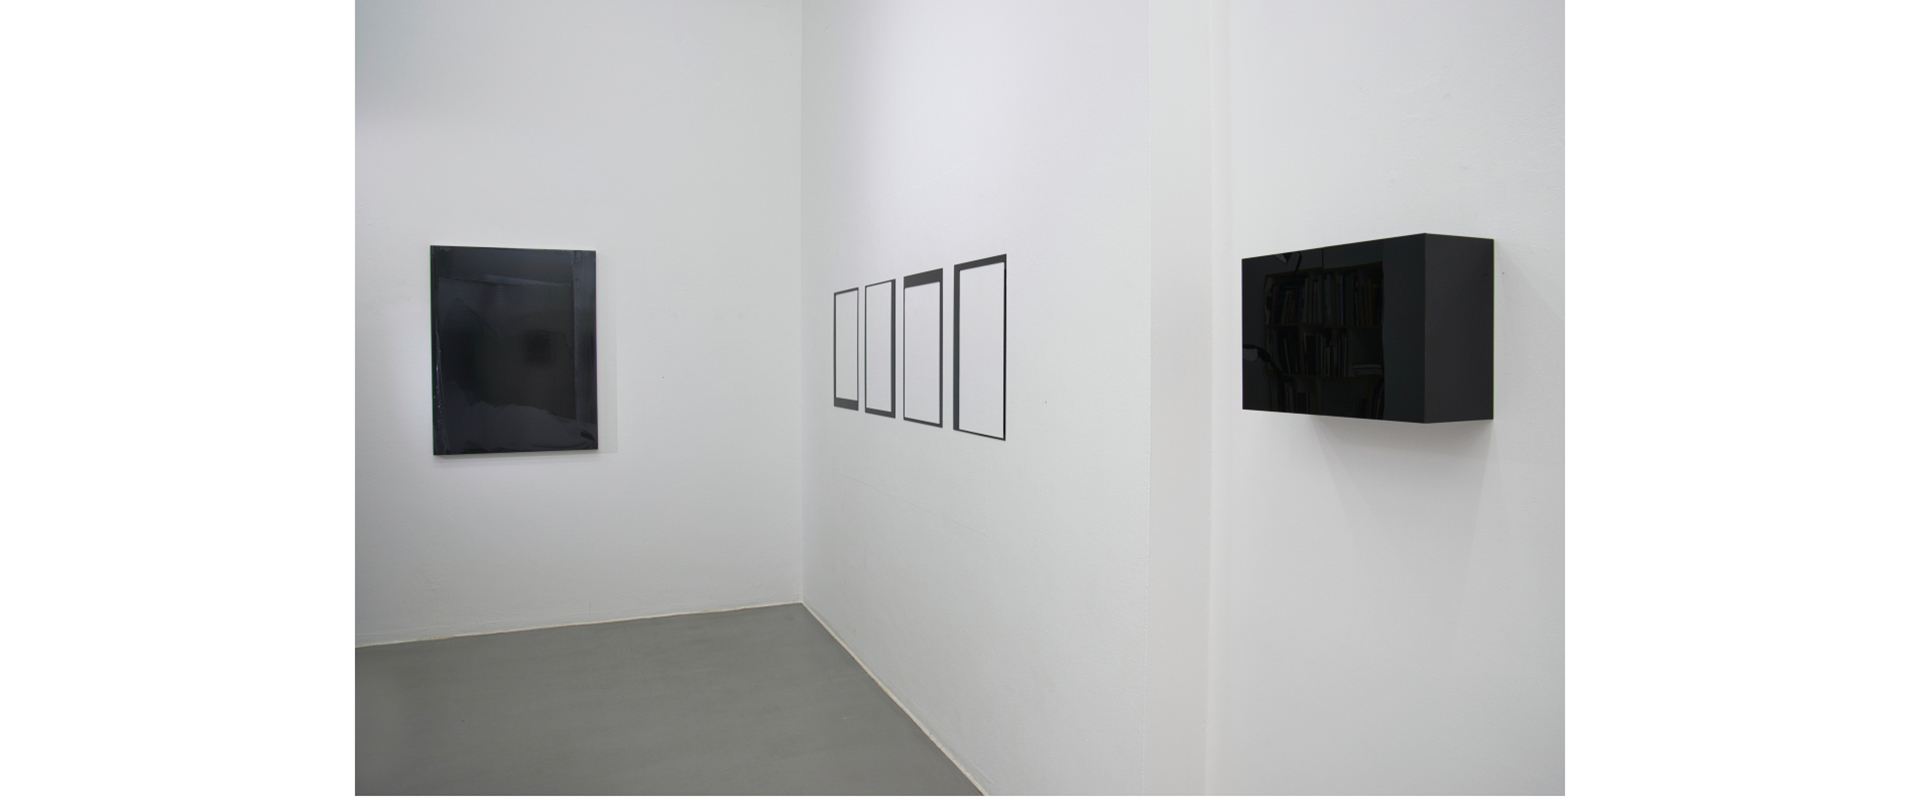 Ausstellungsansicht "Black is beautiful", Galerie Renate Bender 2021, Photo: Gary Thurner